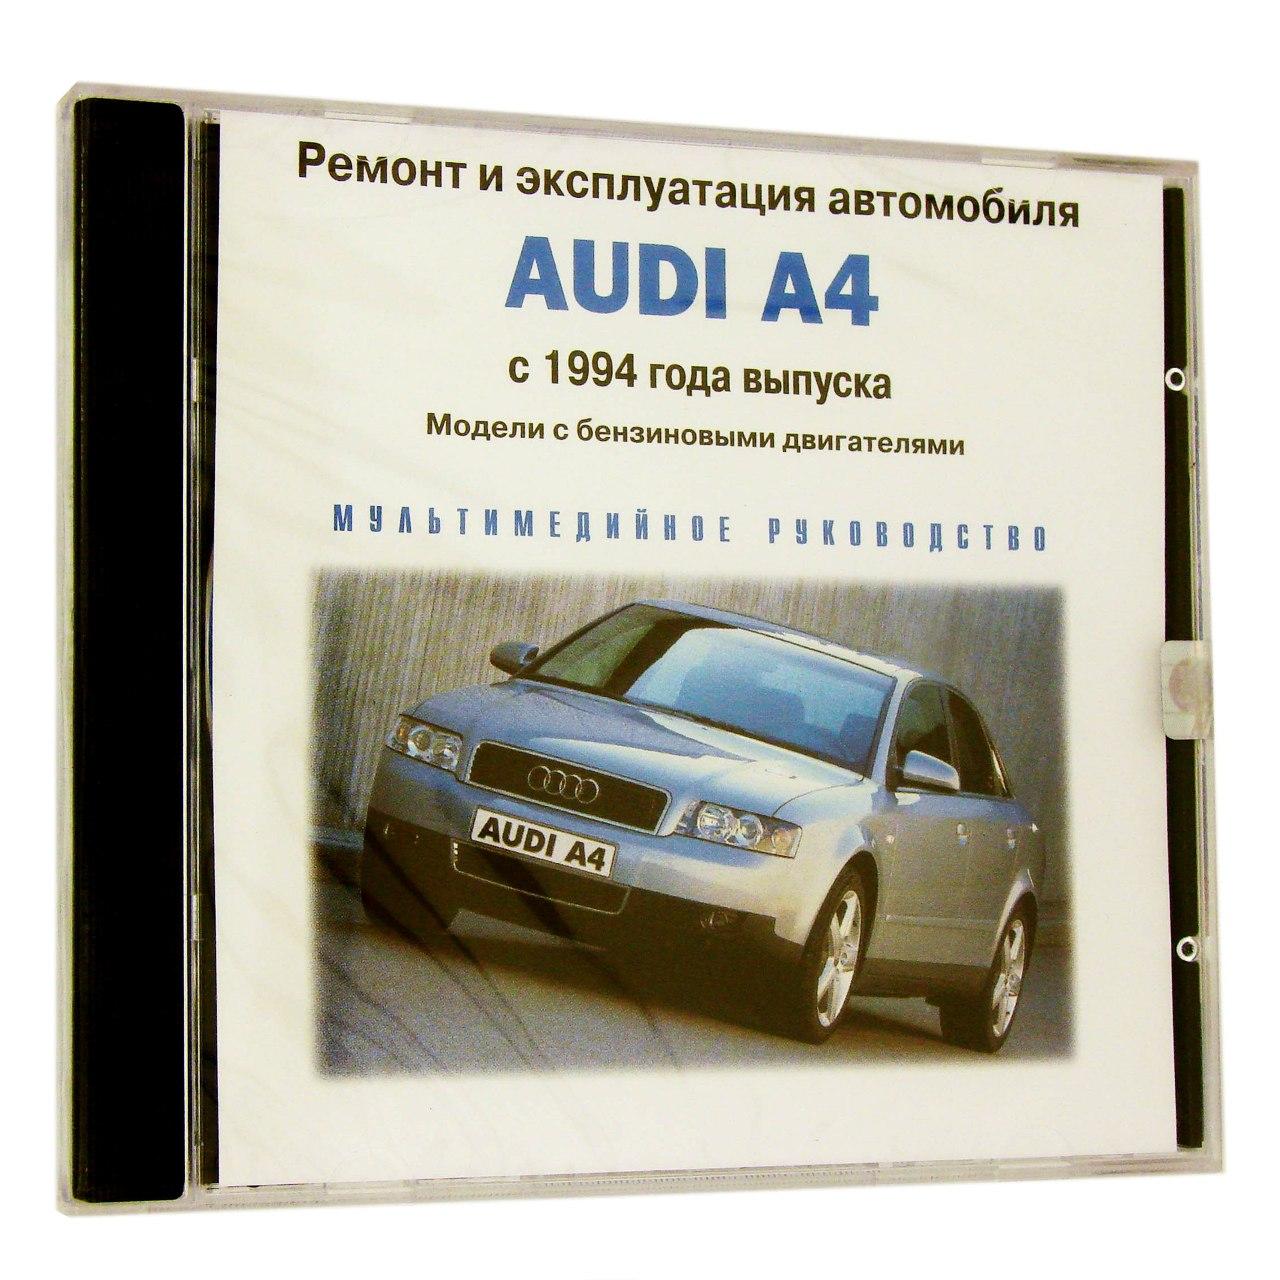 Компьютерный компакт-диск Audi A4 c 1994 Ремонт и эксплуатация автомобиля. (ПК), фирма "RMG Multimedia", 1CD